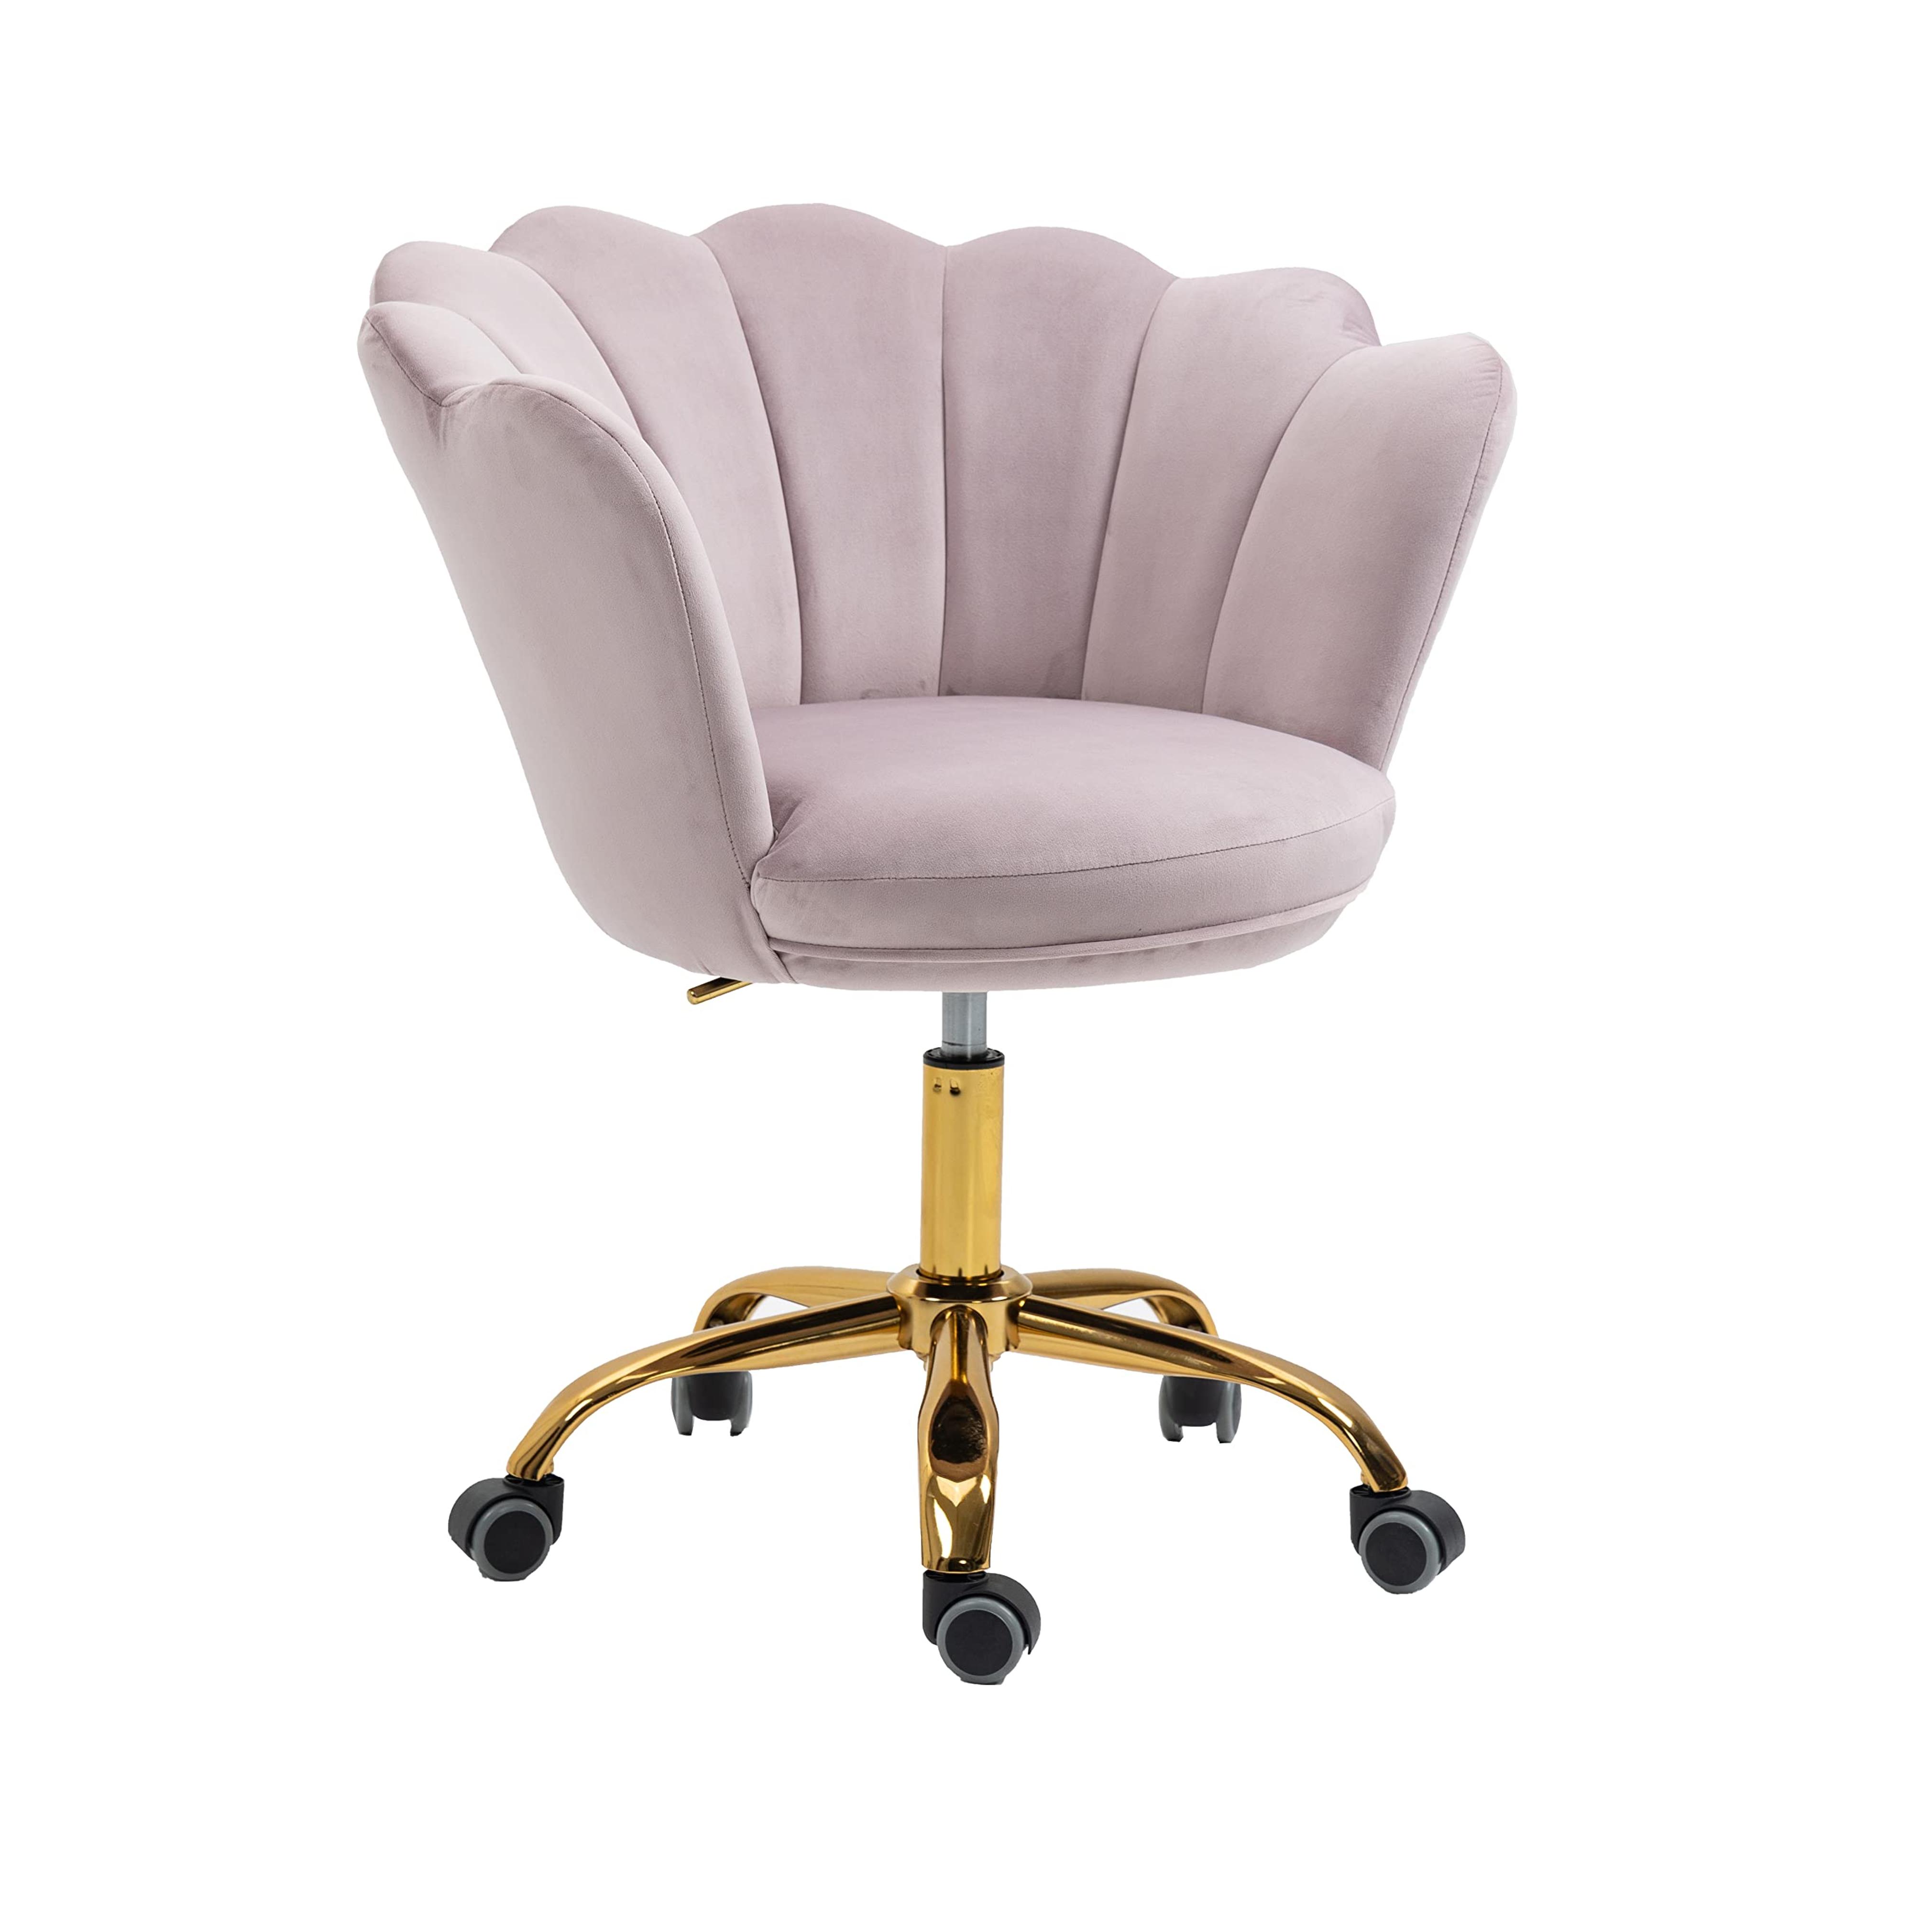 ZOBIDO Comfy Home Office Task Chair with Wheels, Cute Modern Upholstered Velvet Seashell Back Adjustable Swivel Vanity Desk Chair, for Women, for Kids, for Girls, Living Room, Bedroom（Lilac Purple）